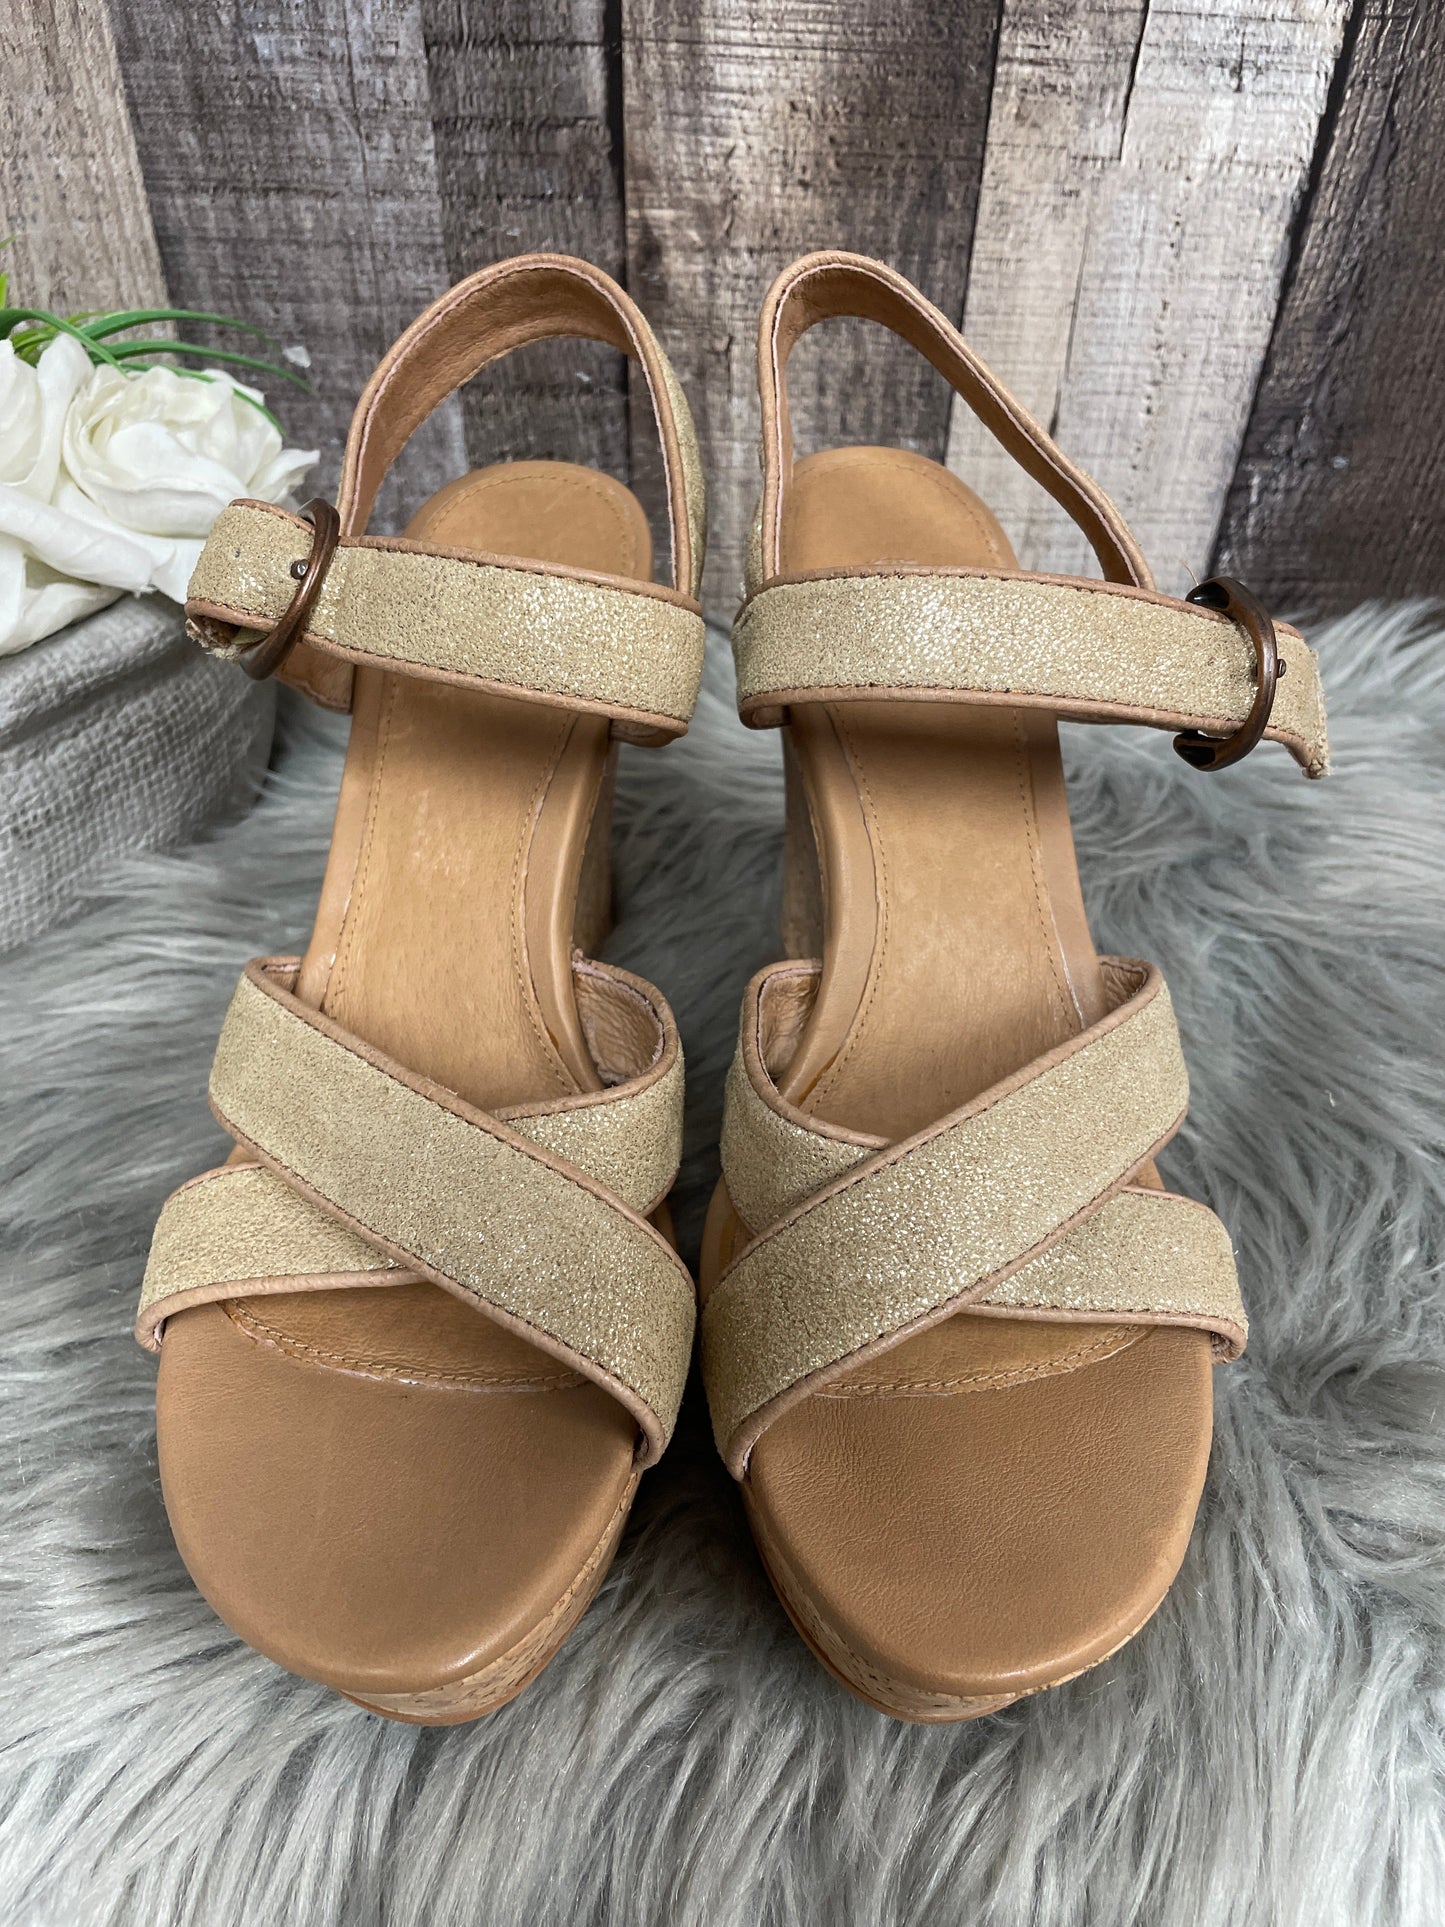 Brown Sandals Heels Wedge Ugg, Size 8